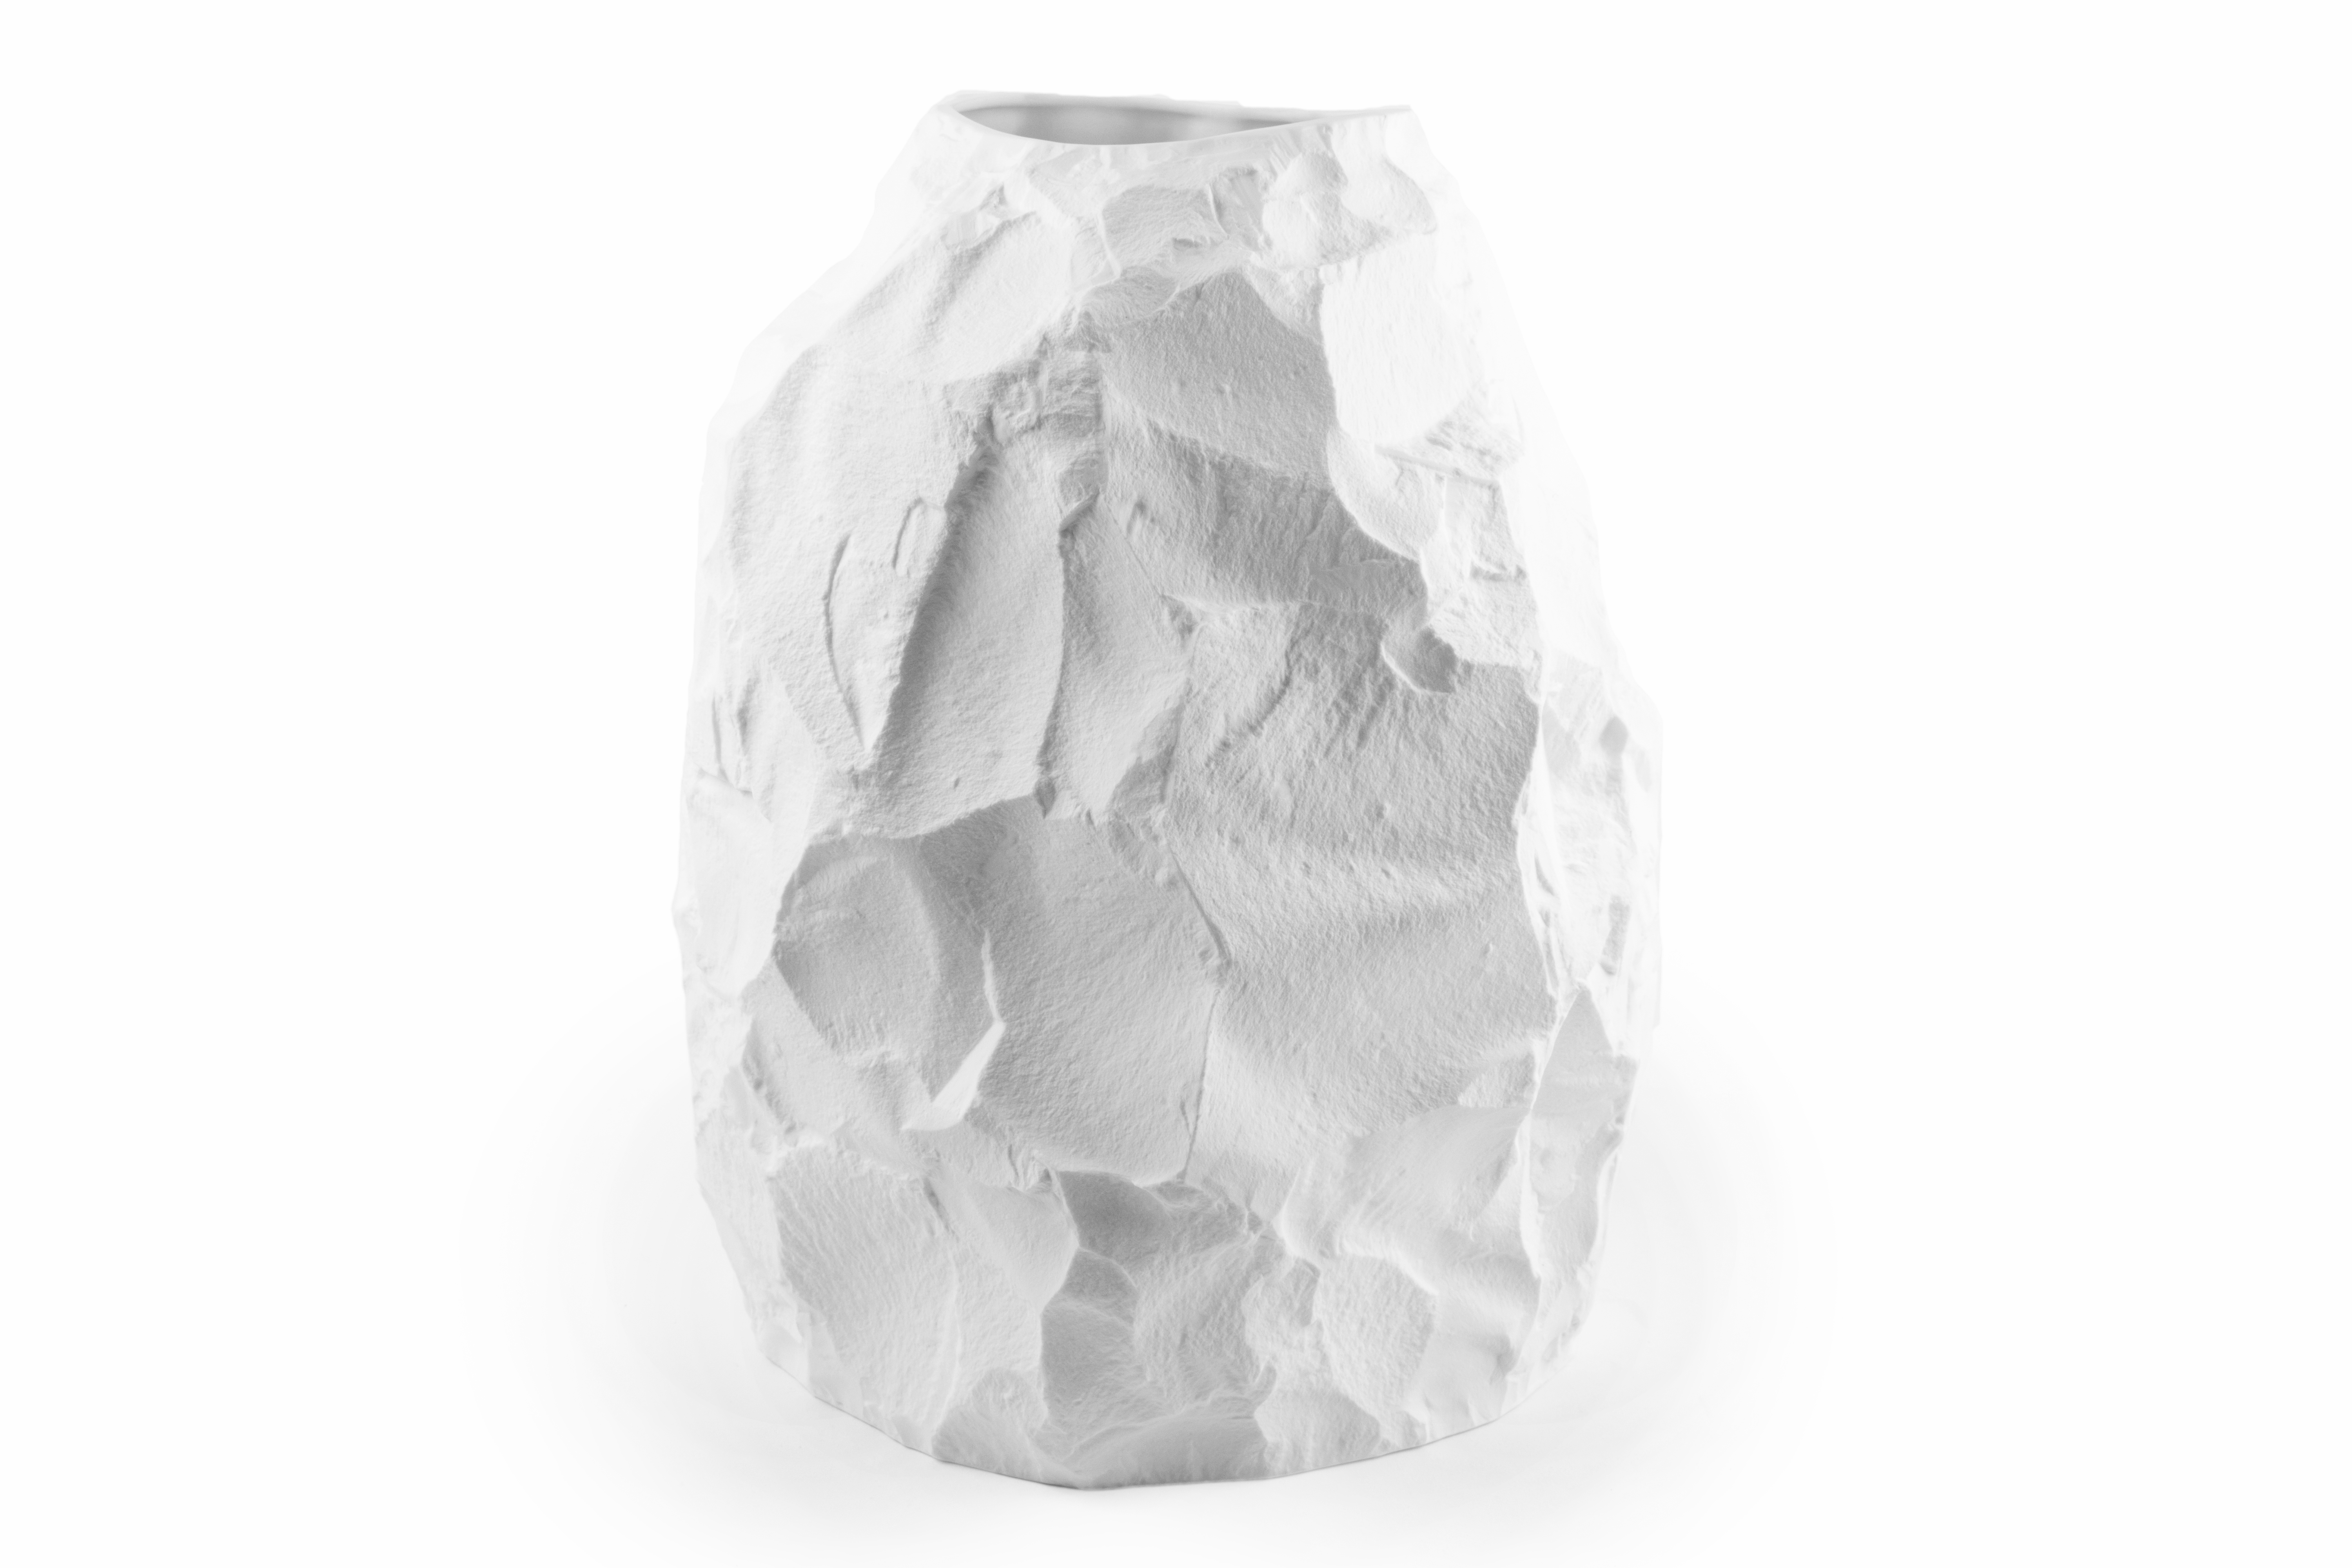 Big Vase 2 – Max Lamb